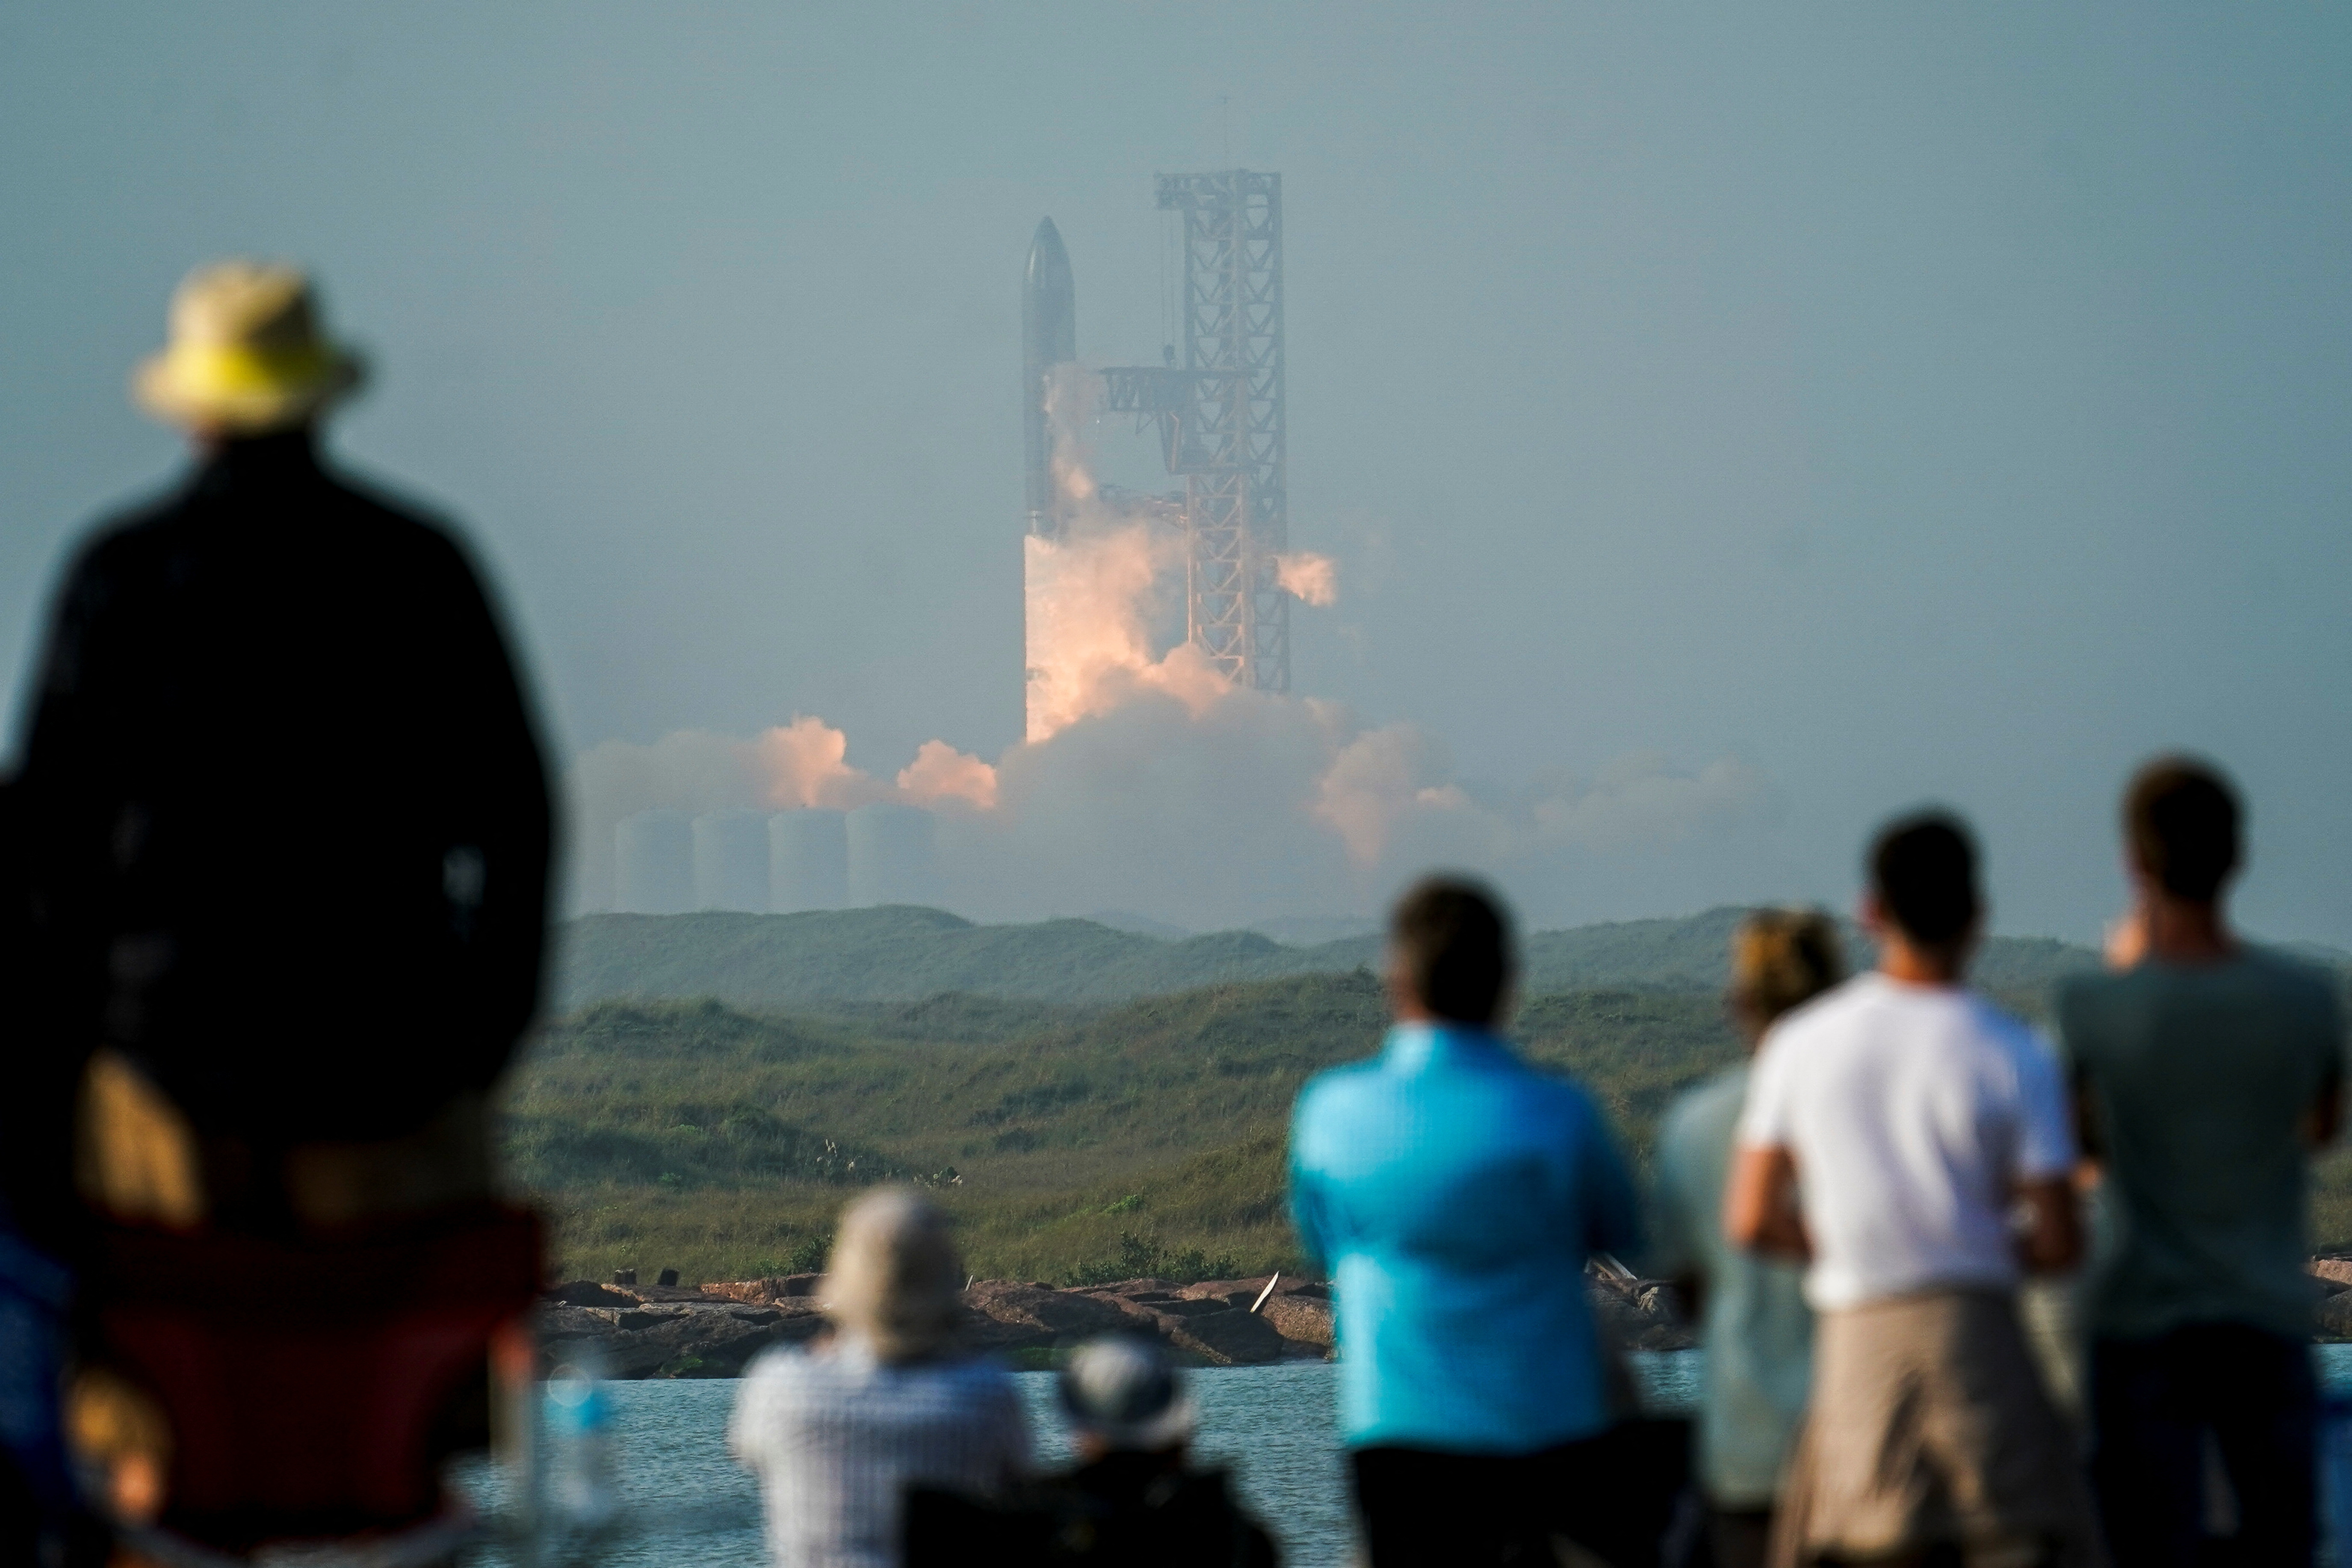 La nave espacial Starship de próxima generación de SpaceX sobre su poderoso cohete Super Heavy despega de la plataforma de lanzamiento Boca Chica de la compañía en un breve vuelo de prueba sin tripulación cerca de Brownsville, Texas, EE. UU. 20 de abril de 2023. REUTERS/Go Nakamura